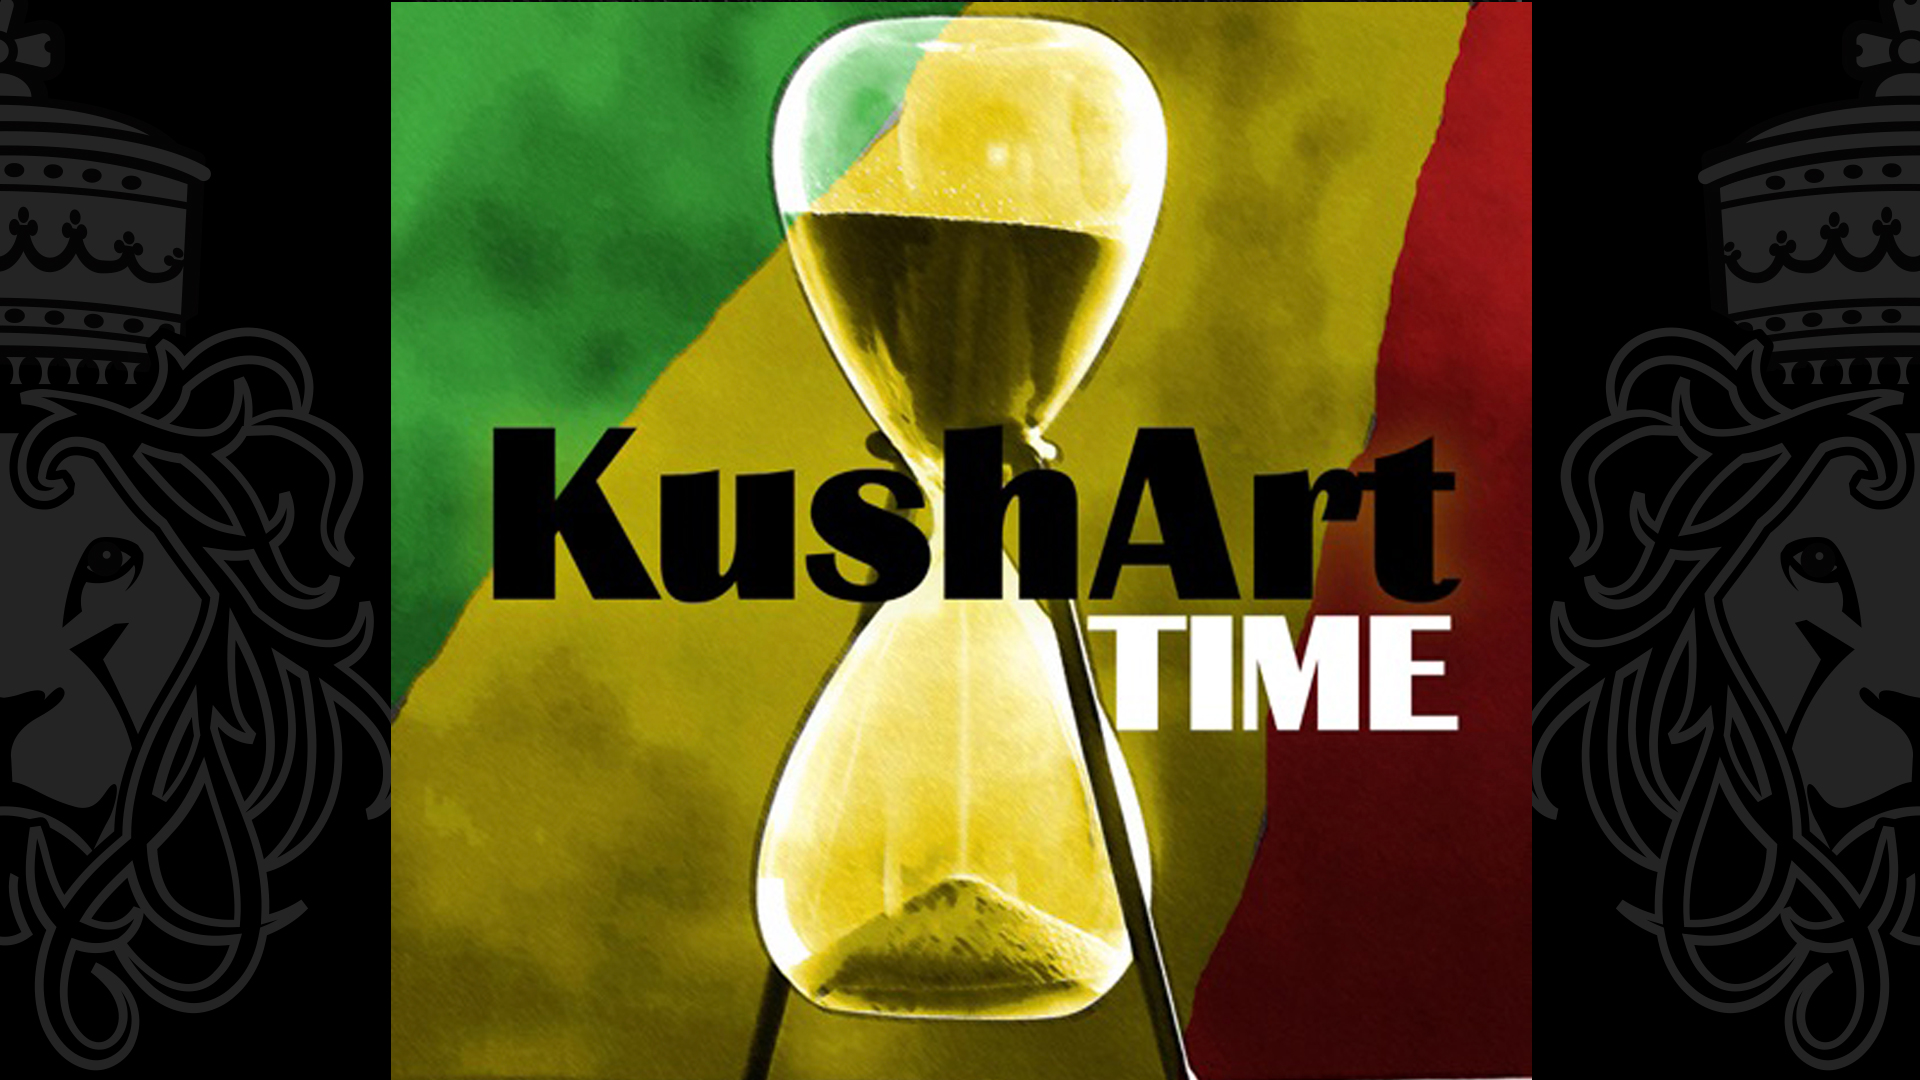 The Legendary KushArt Release new "TIME" album